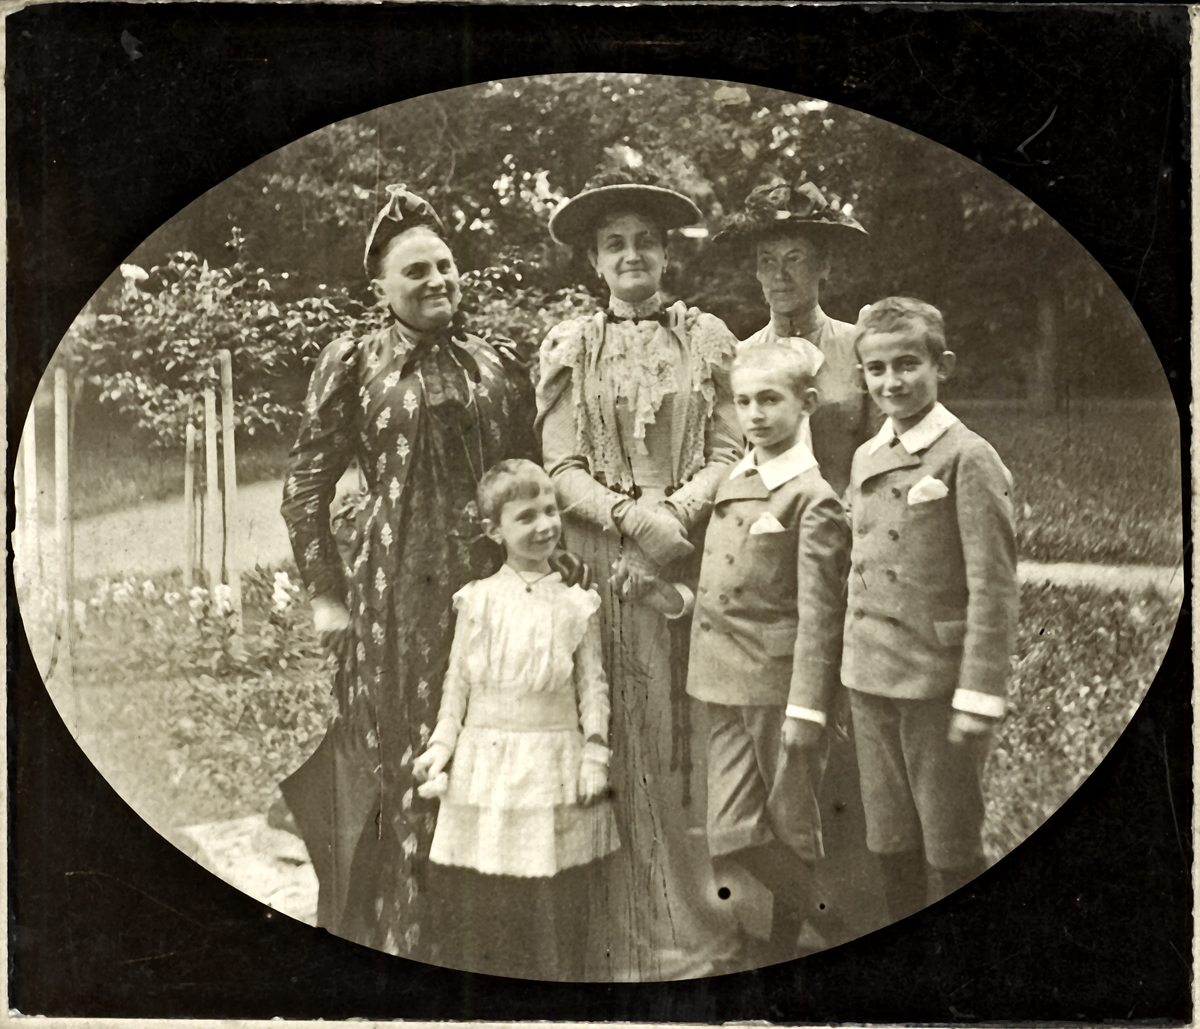 Ismeretlen: Hatvany Lajos anyjával, Paula nagyanyjával, testvéreivel | PLM Collection